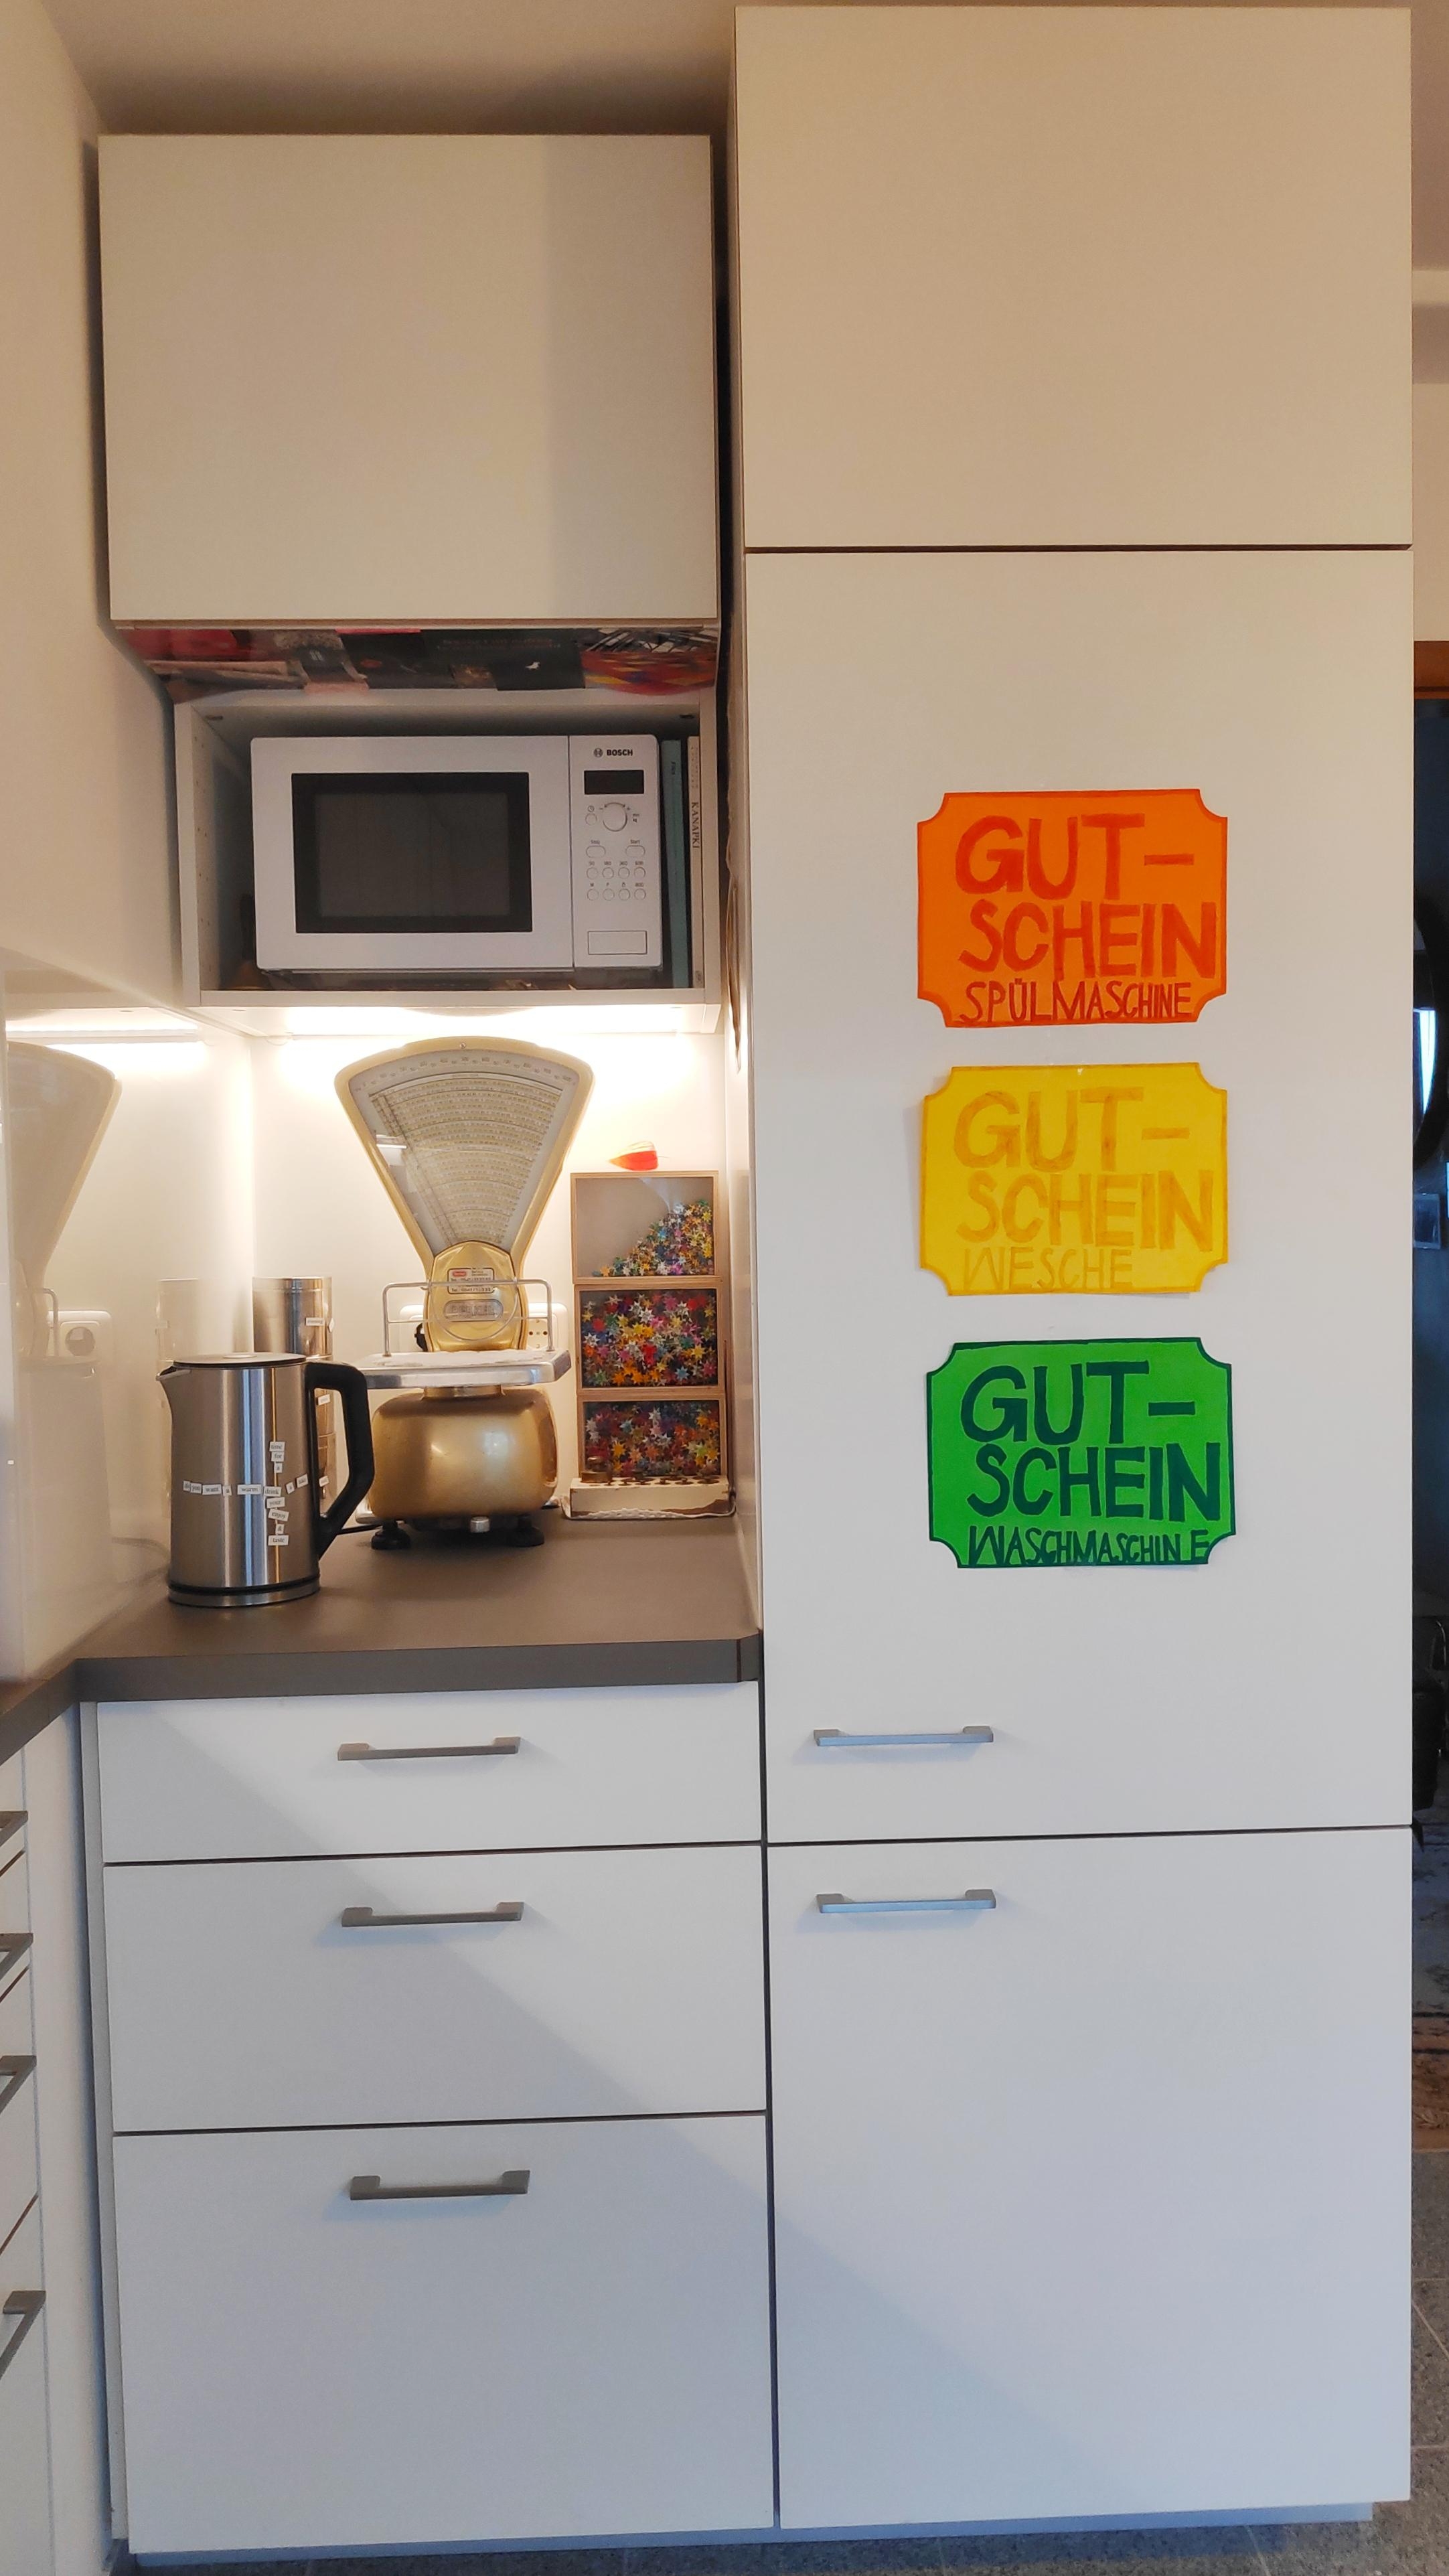 .Die Nische der Details.
#kitchendetails #Retro #Nachlass #Waage #Küche #DIY